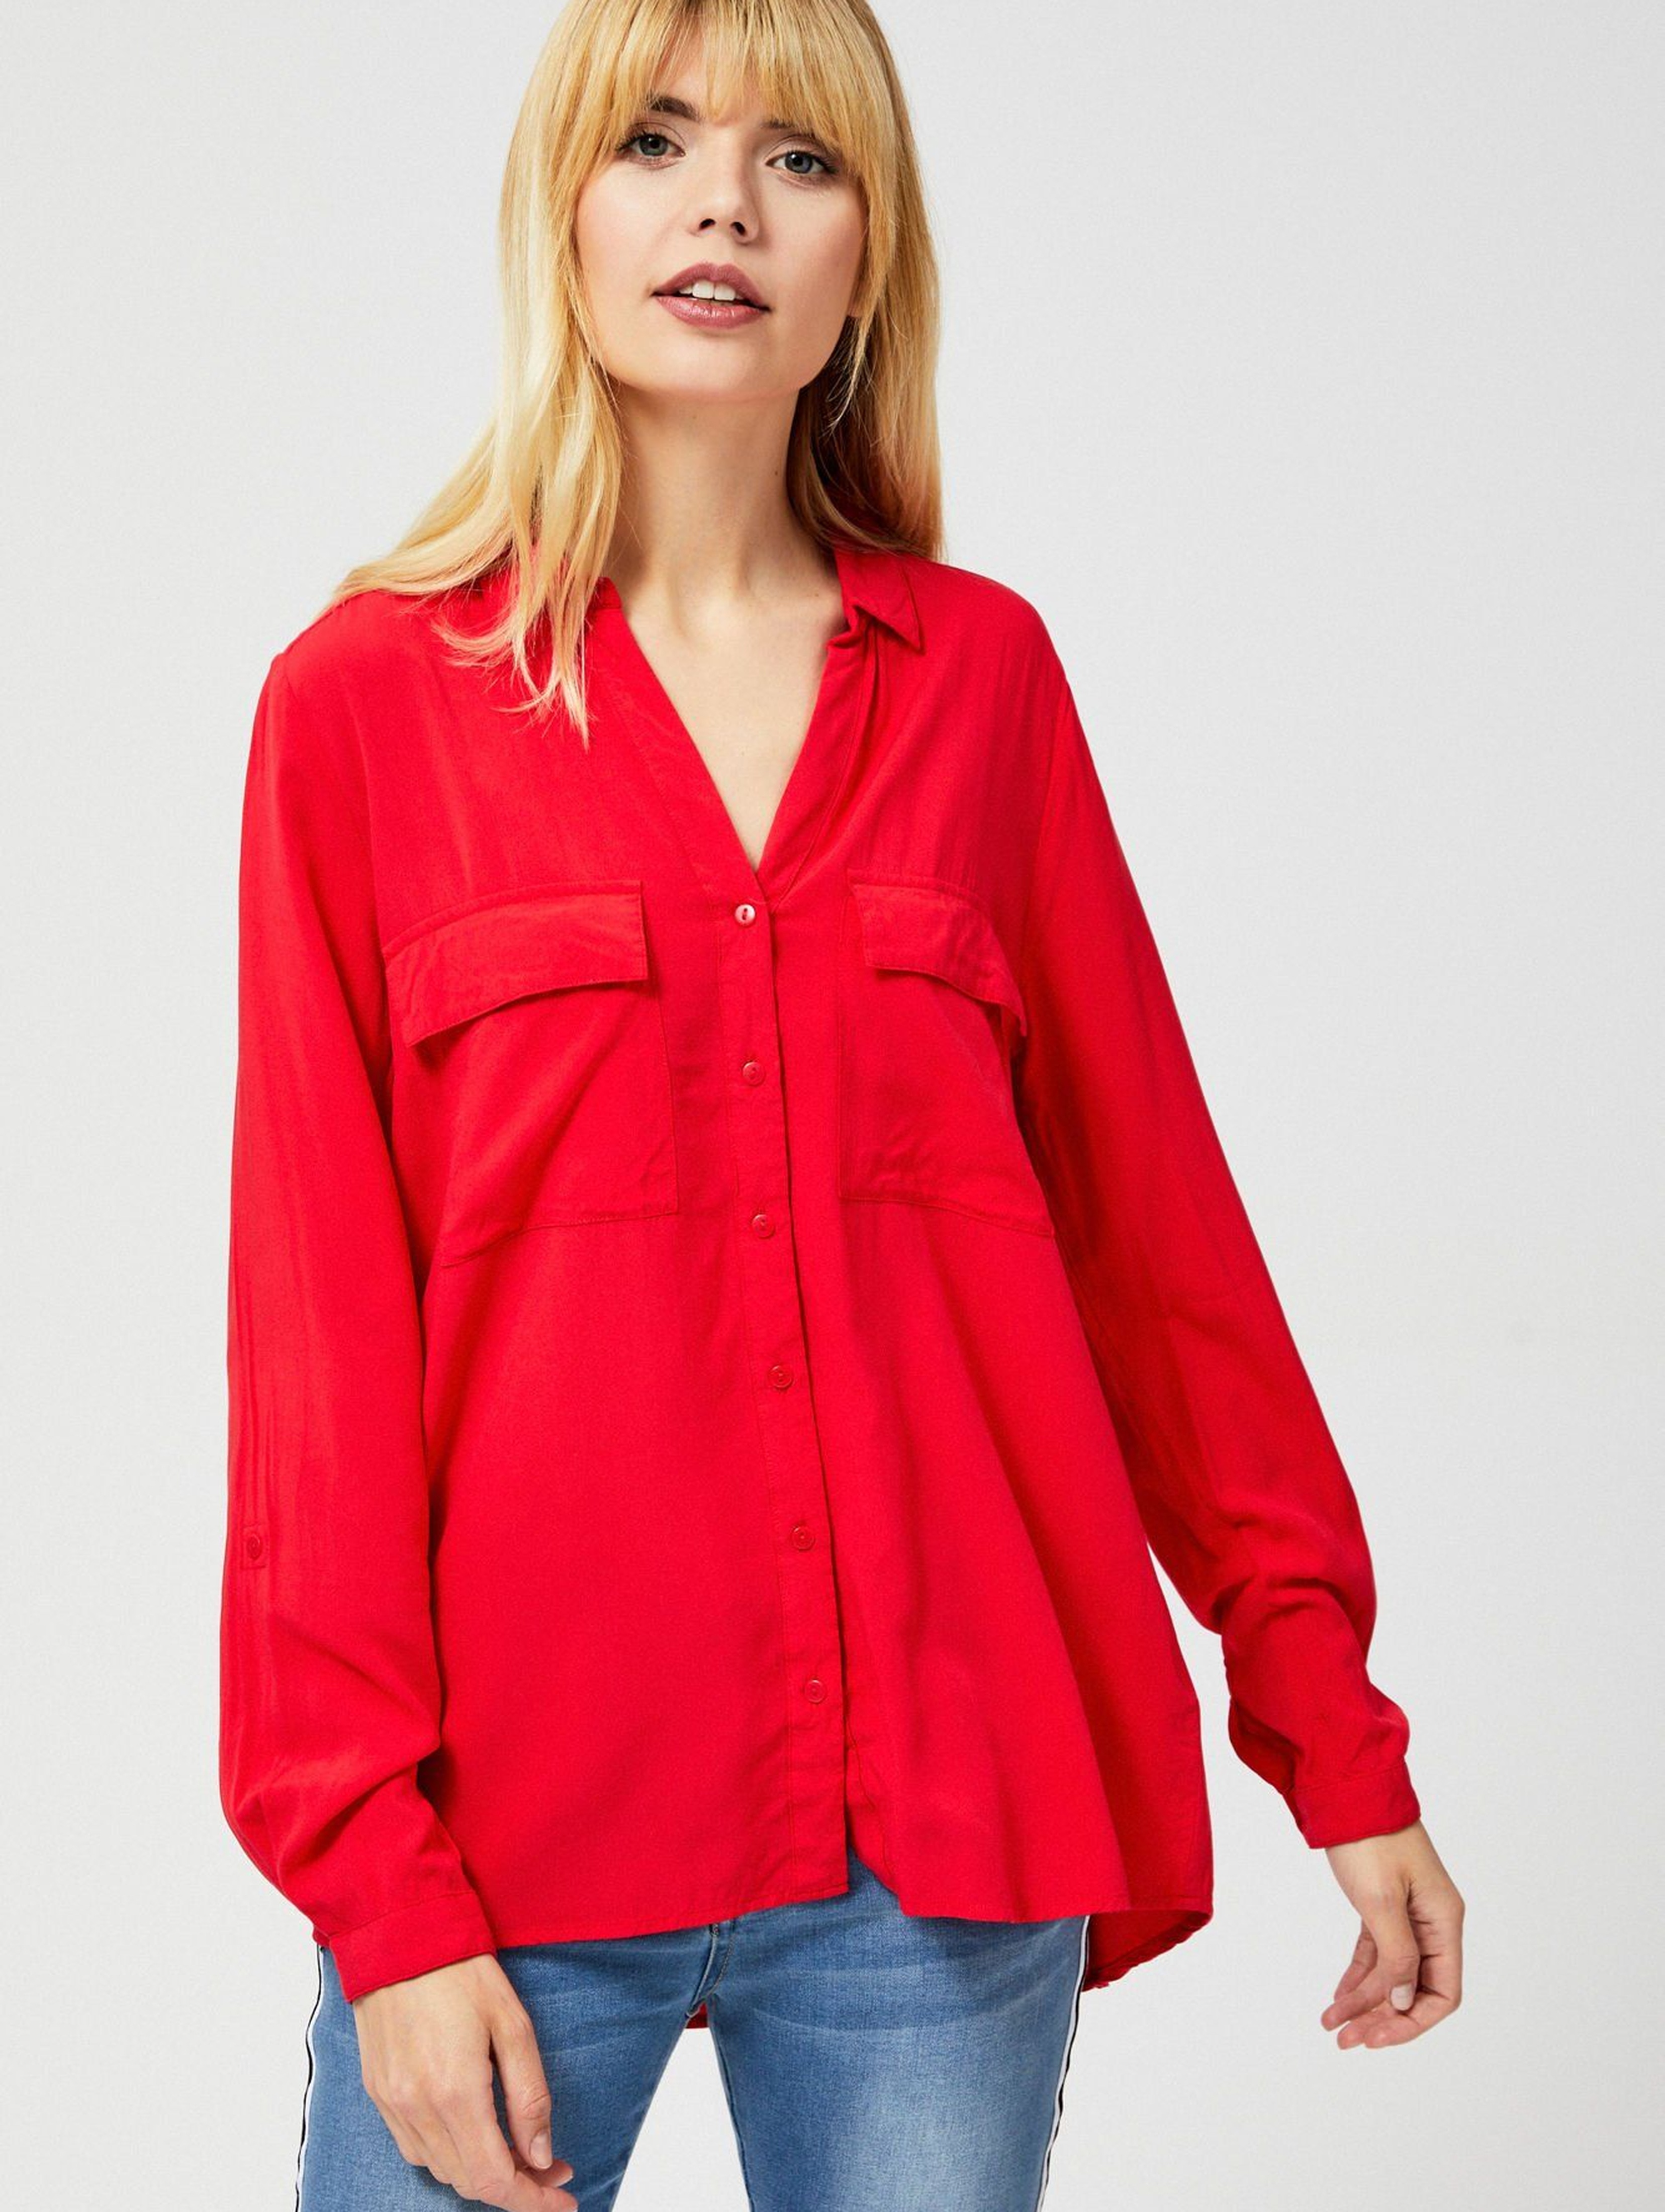 Czarwona koszula damska z długim rękawem